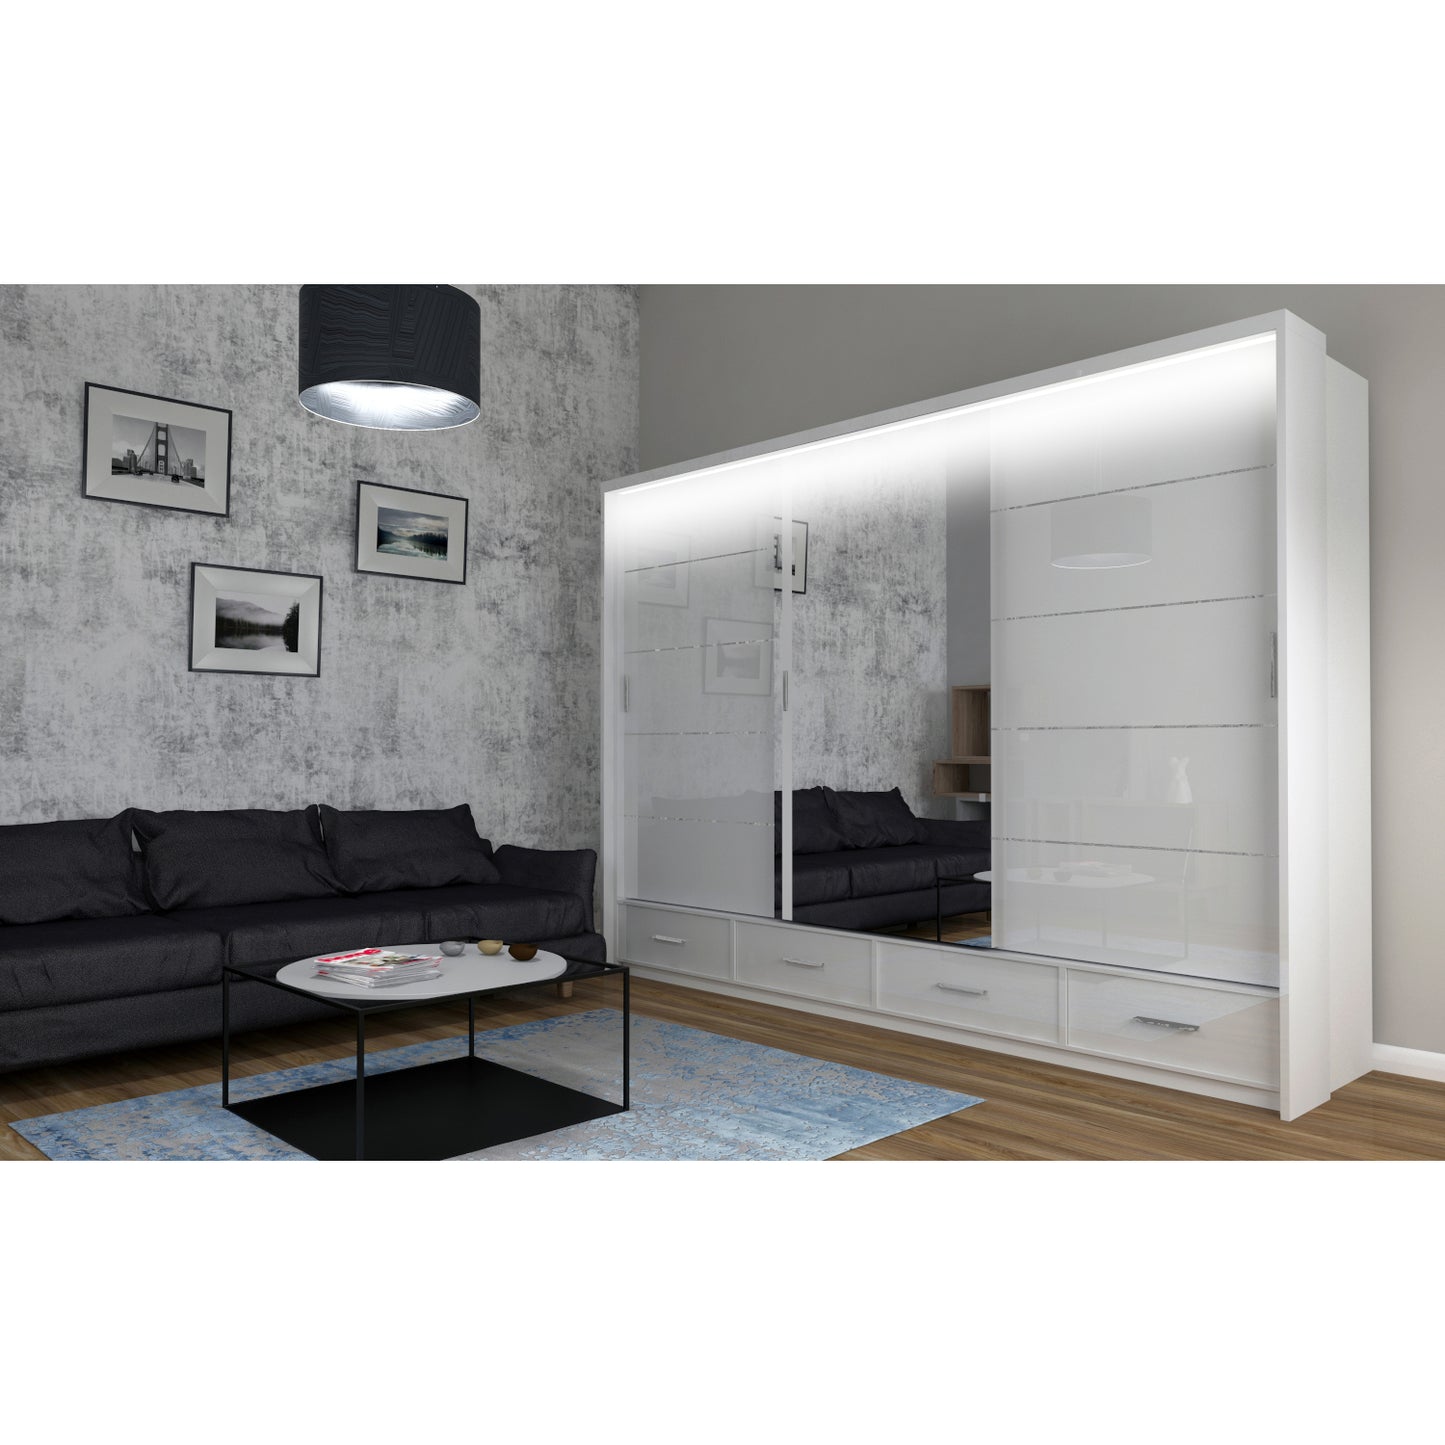 Aranżacja szafy przesuwnej Sycylia z oświetleniem LED, czterema szufladami oraz dużym lustrem. Biała szafa przesuwna z lustrem została wykończona na wysoki połysk. Szafa przesuwna z lustrem Sycylia jest dostępna w super cenie na DMSM.pl